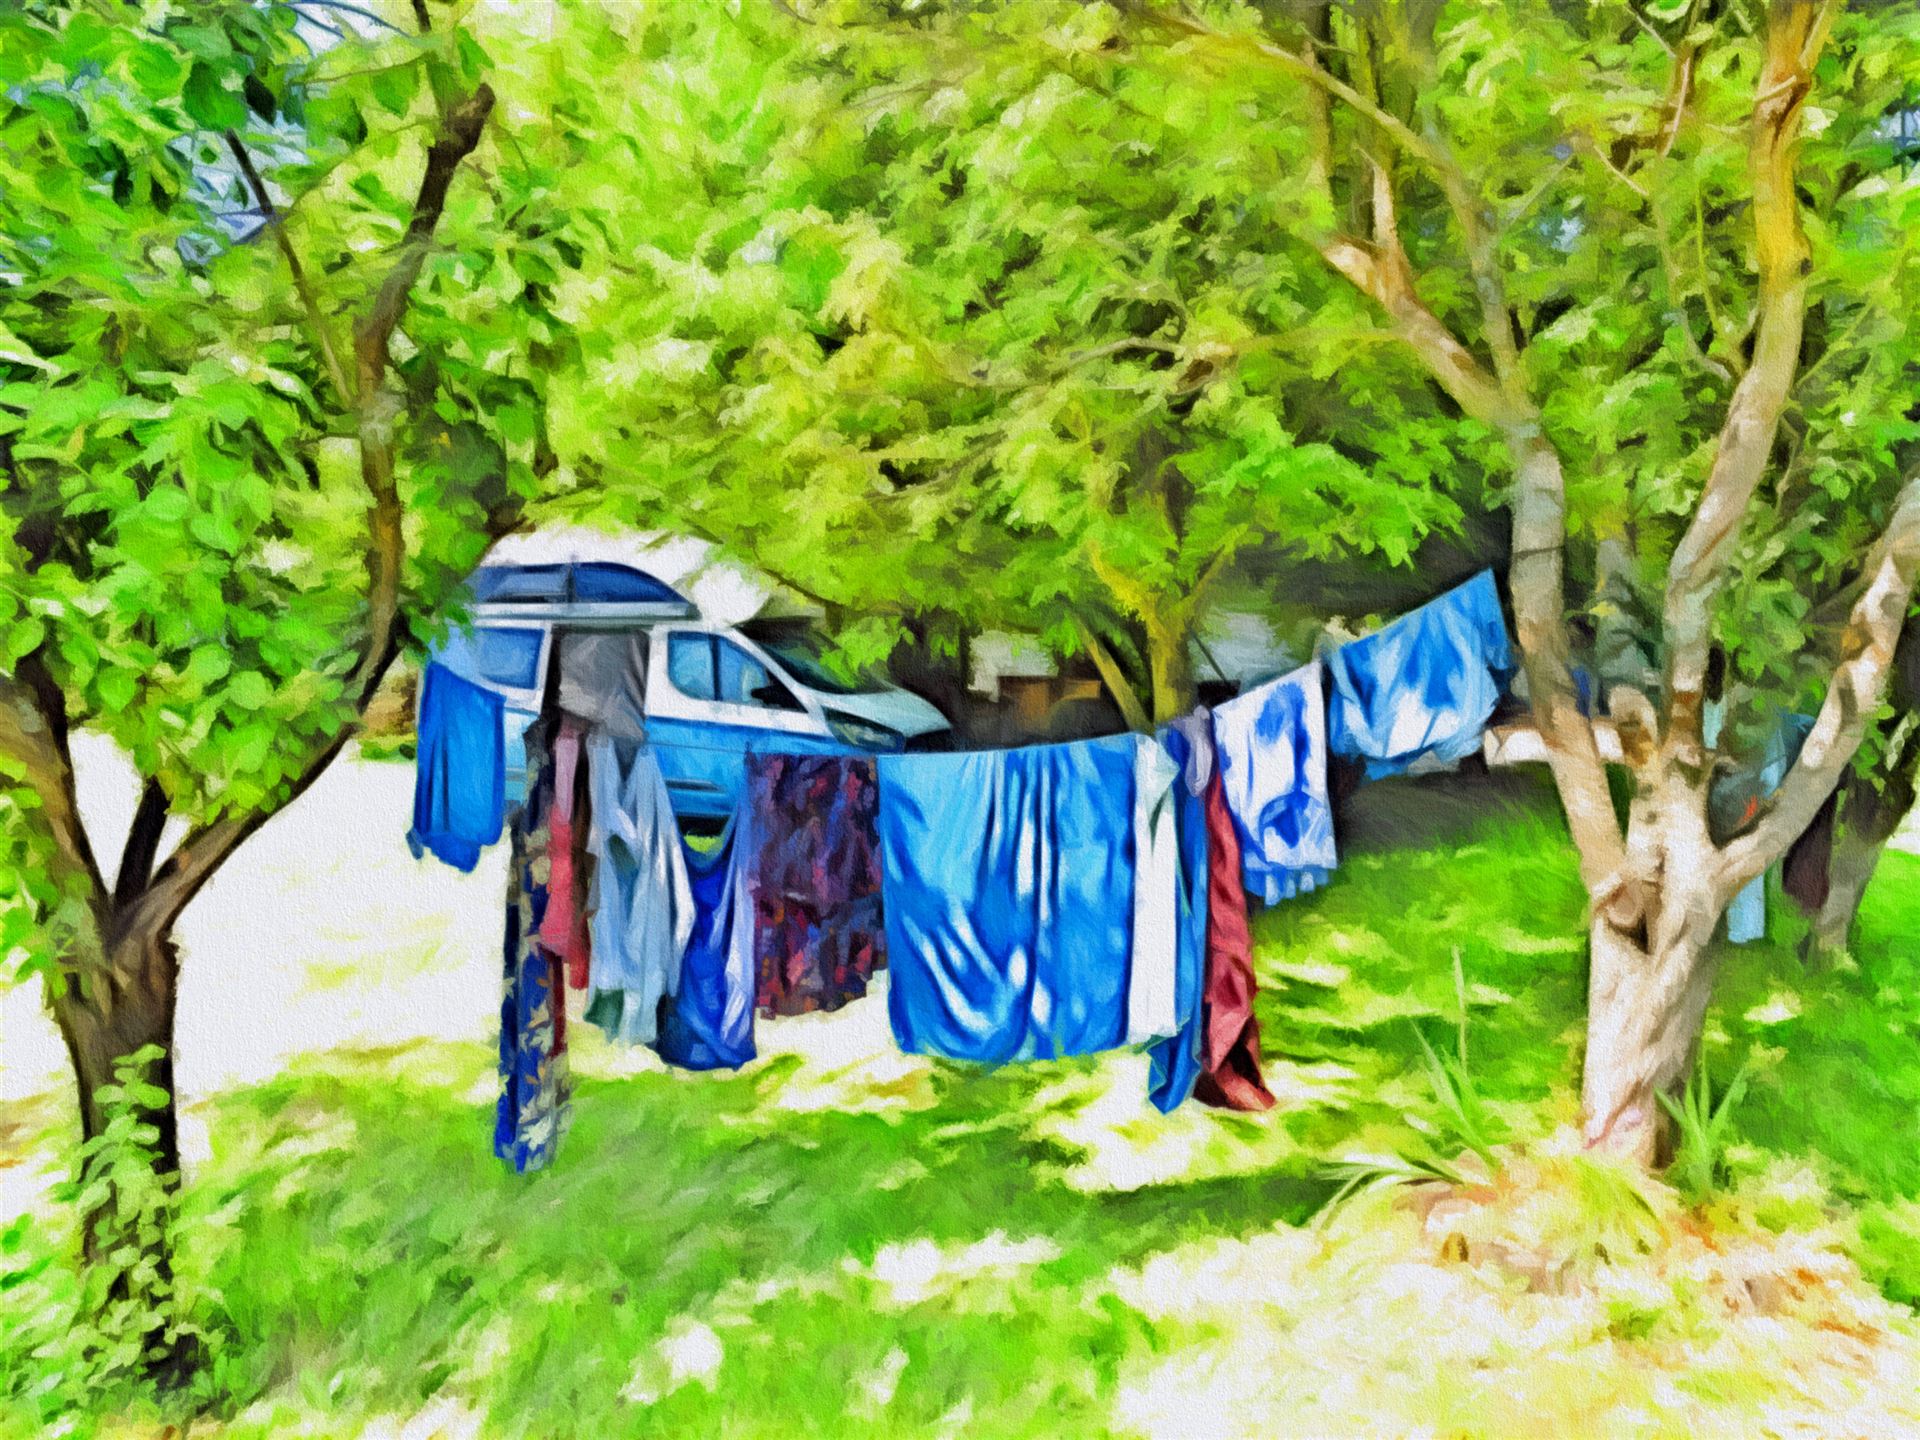 © autormobil.de | Camping mit dem Ford Nugget – Wäsche waschen auf Reisen